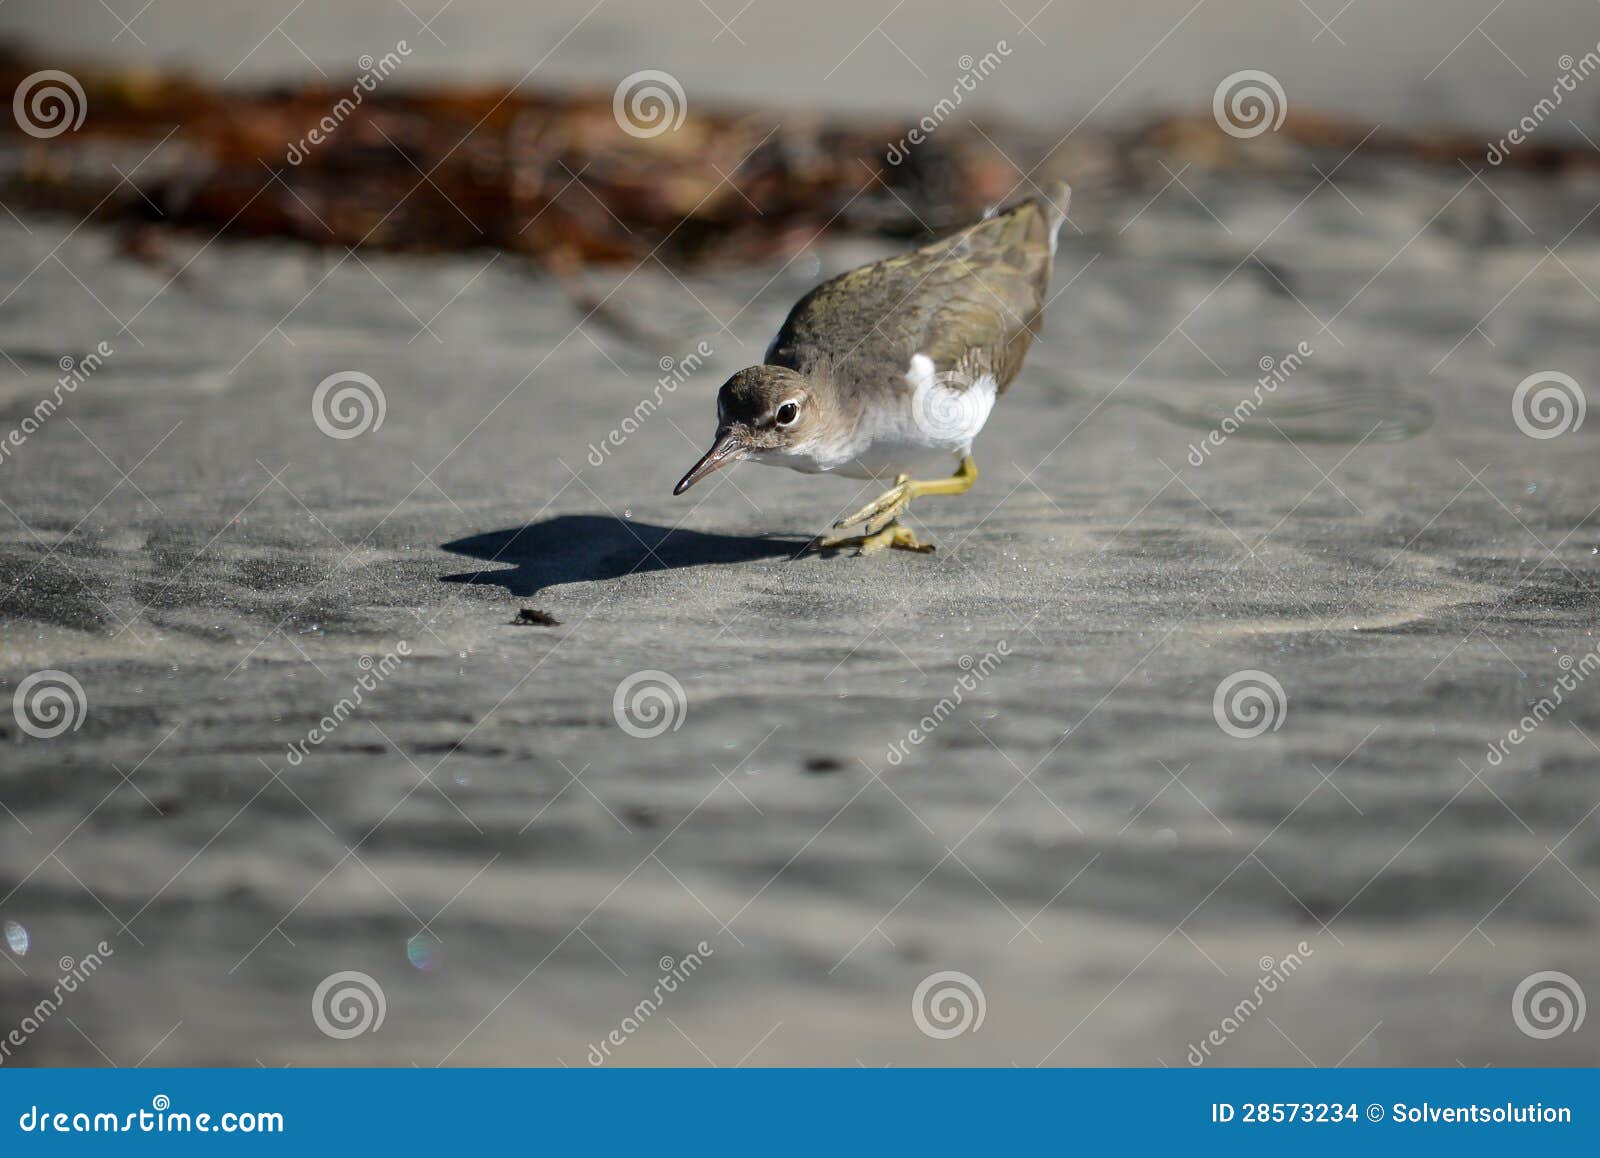 shorebird hunting